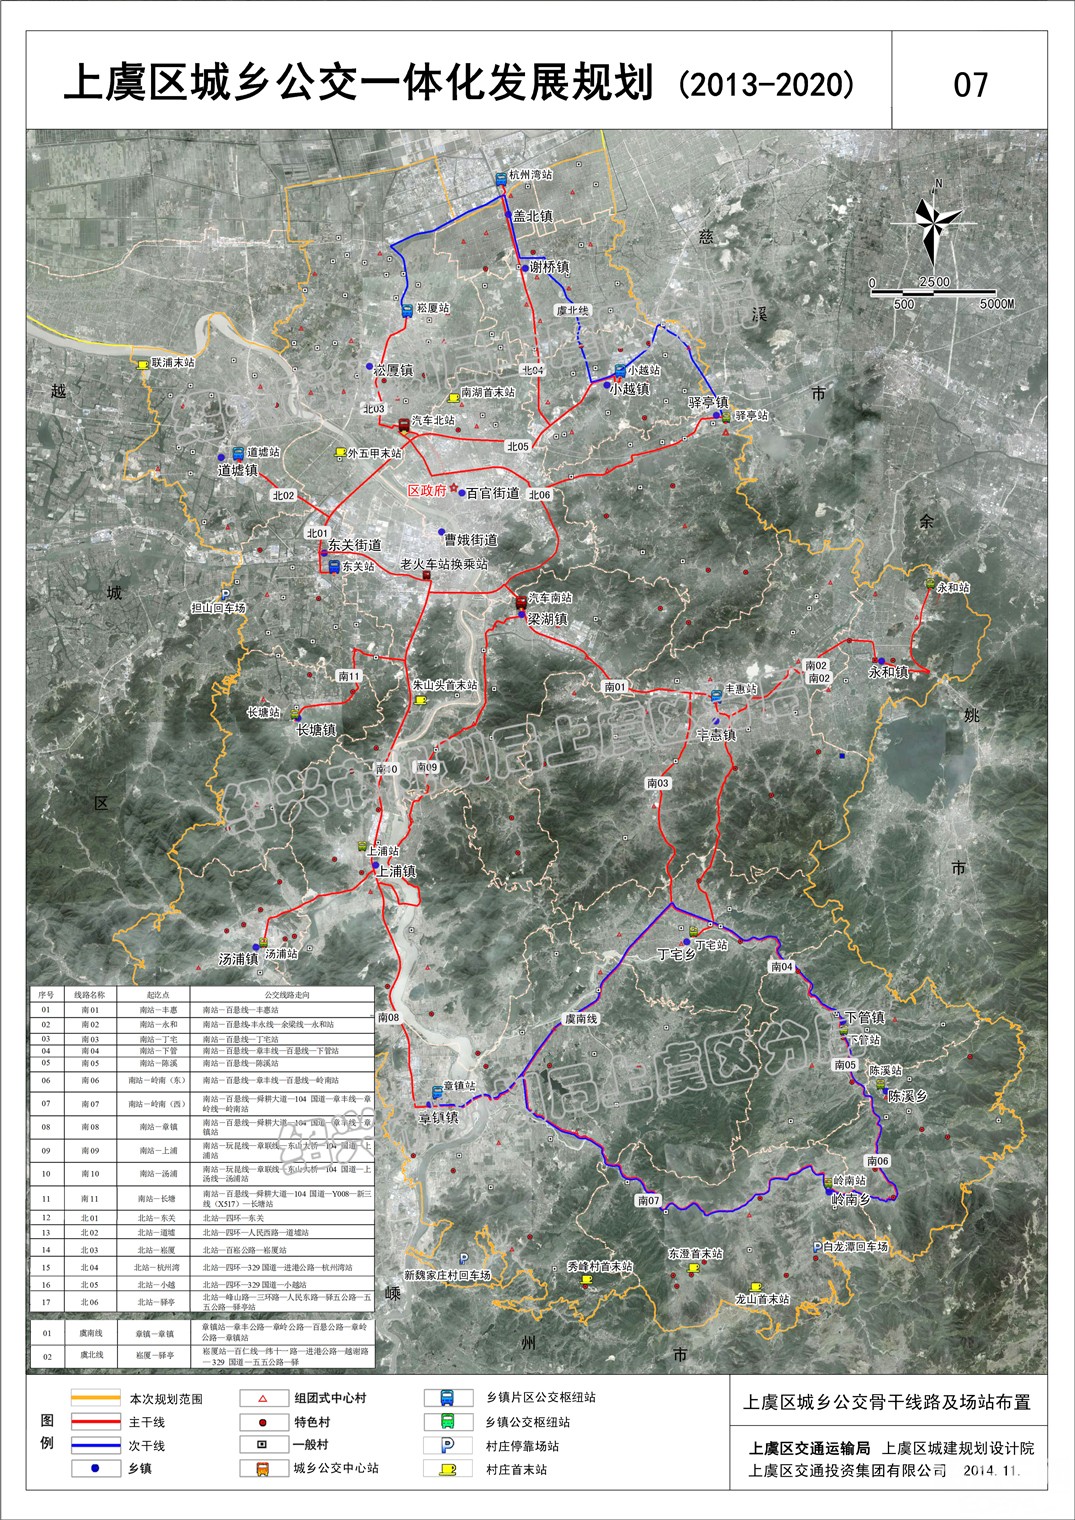 《上虞区城乡公交一体化发展规划(20-2020)》方案公示